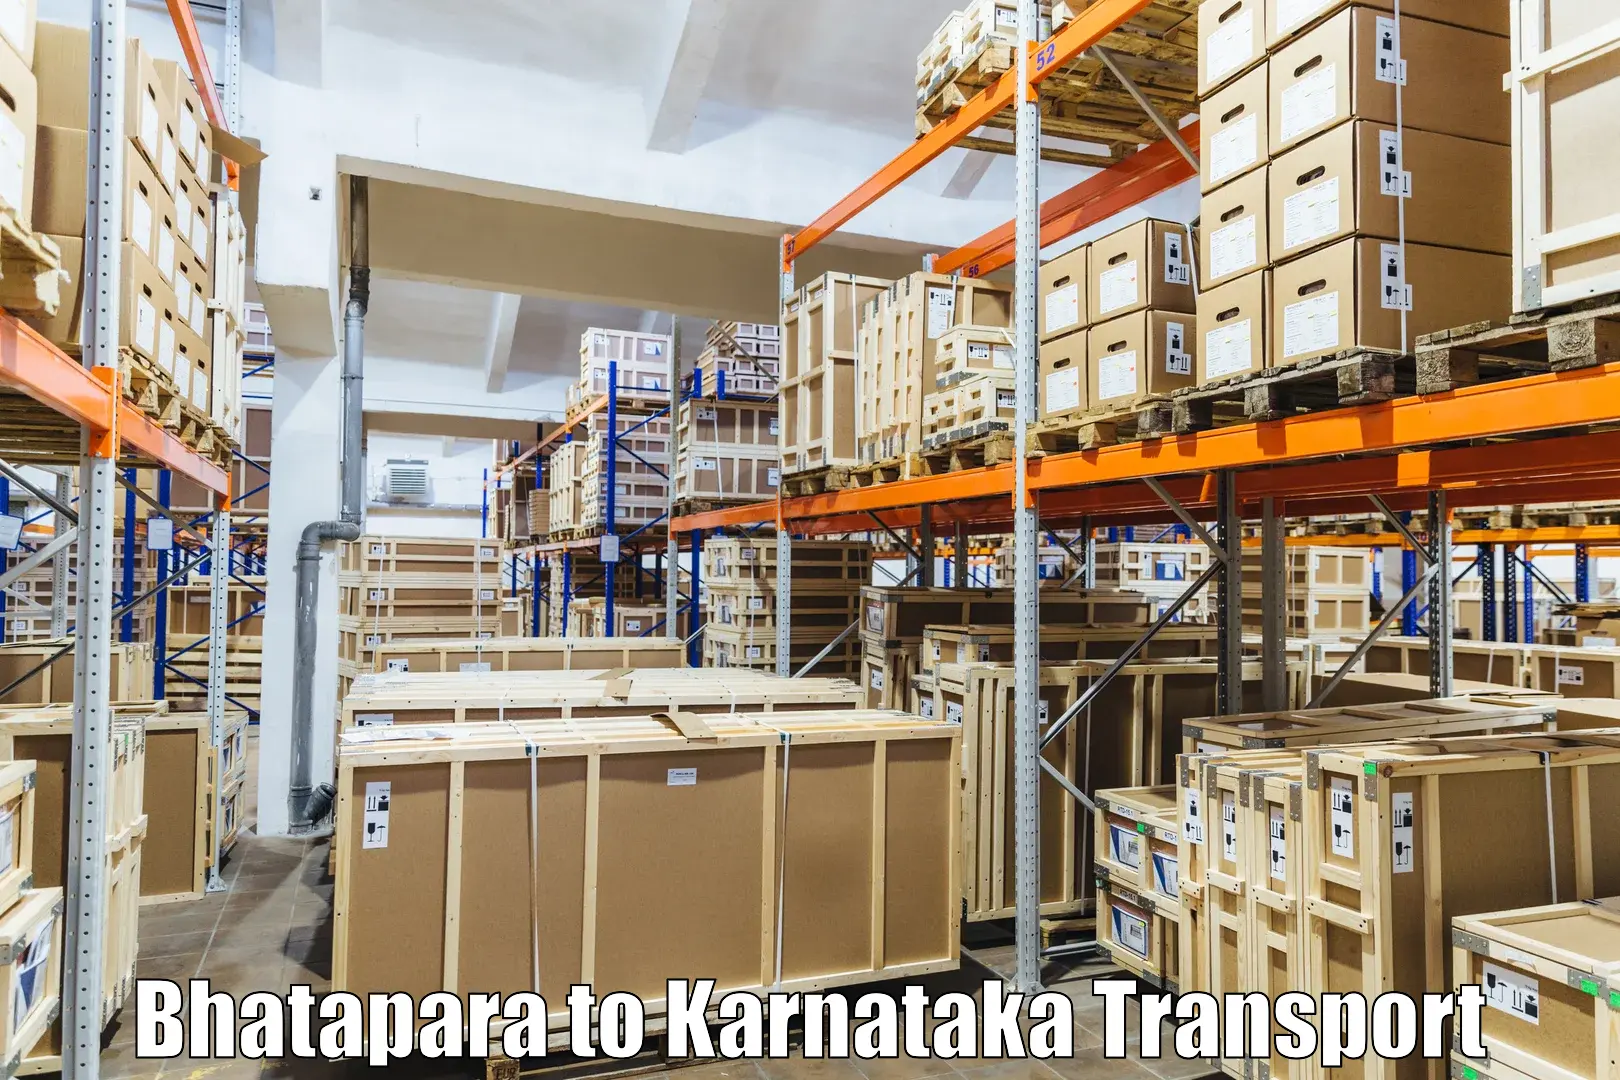 Delivery service Bhatapara to Hagaribommanahalli